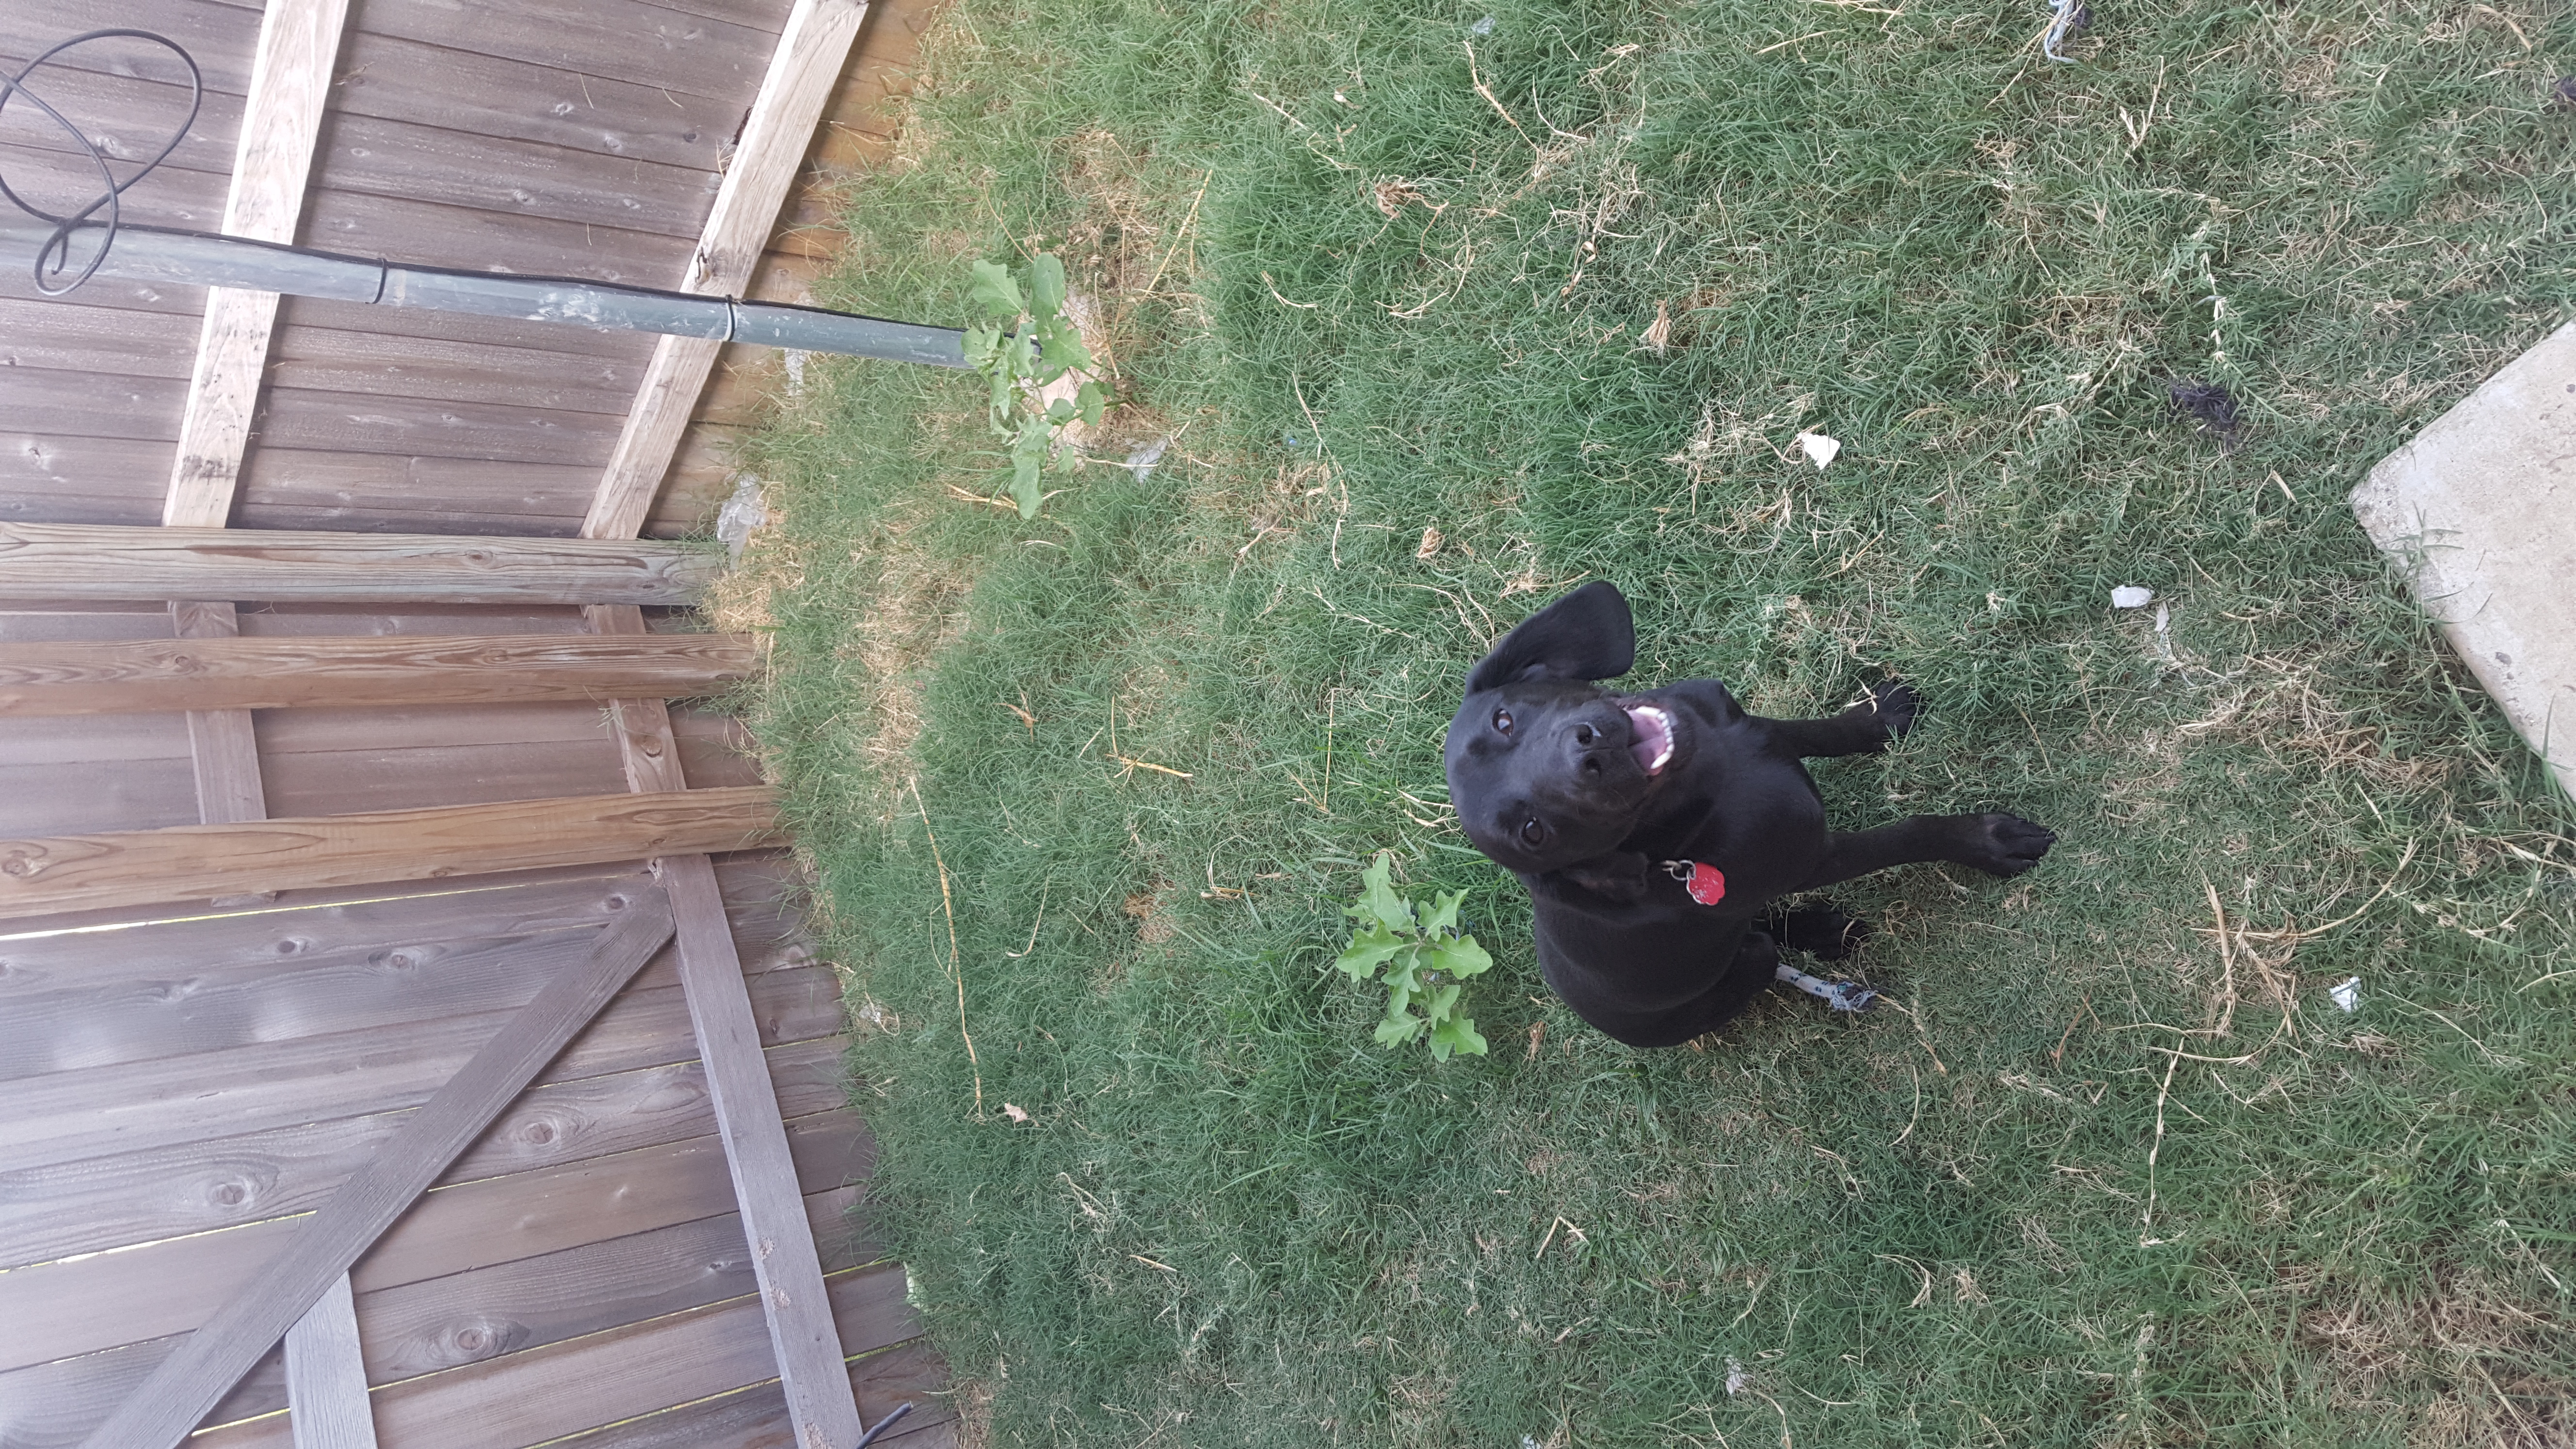 adoptable Dog in Killeen,TX named Shadow